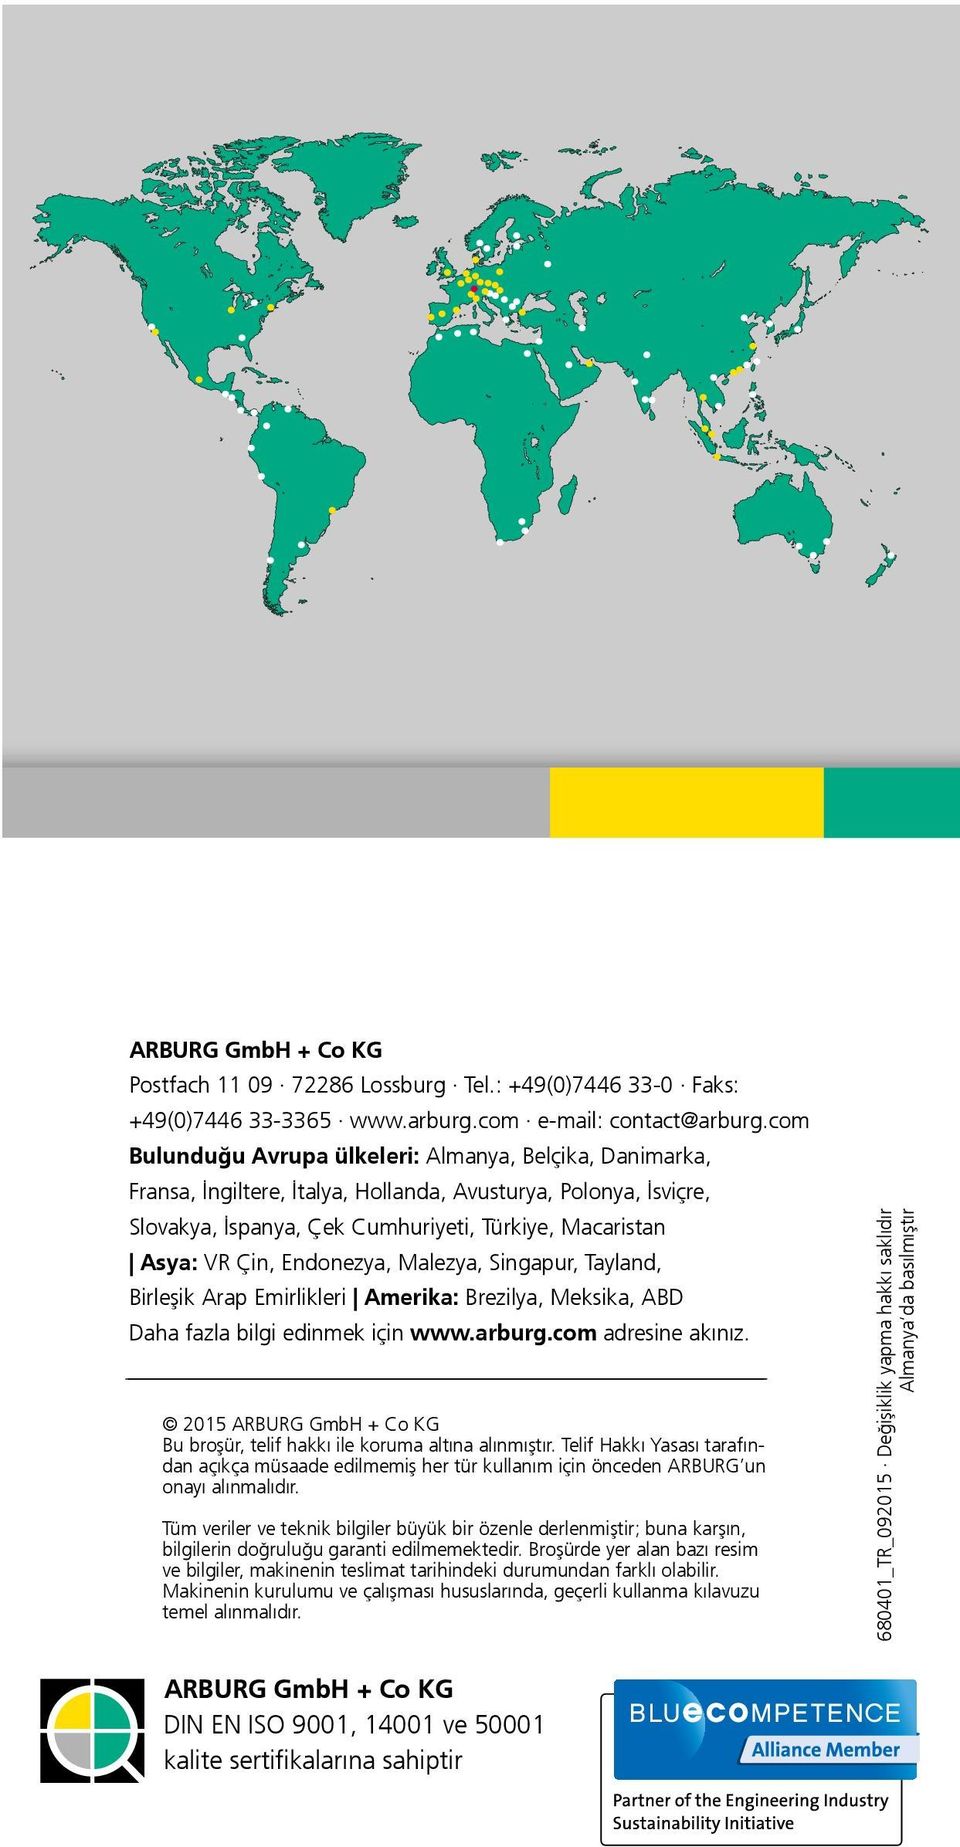 Amerika: Brezilya, Meksika, ABD Daha fazla bilgi edinmek için www.arburg.com adresine akınız. 2015 ARBURG GmbH + Co KG Bu broşür, telif hakkı ile koruma altına alınmıştır.